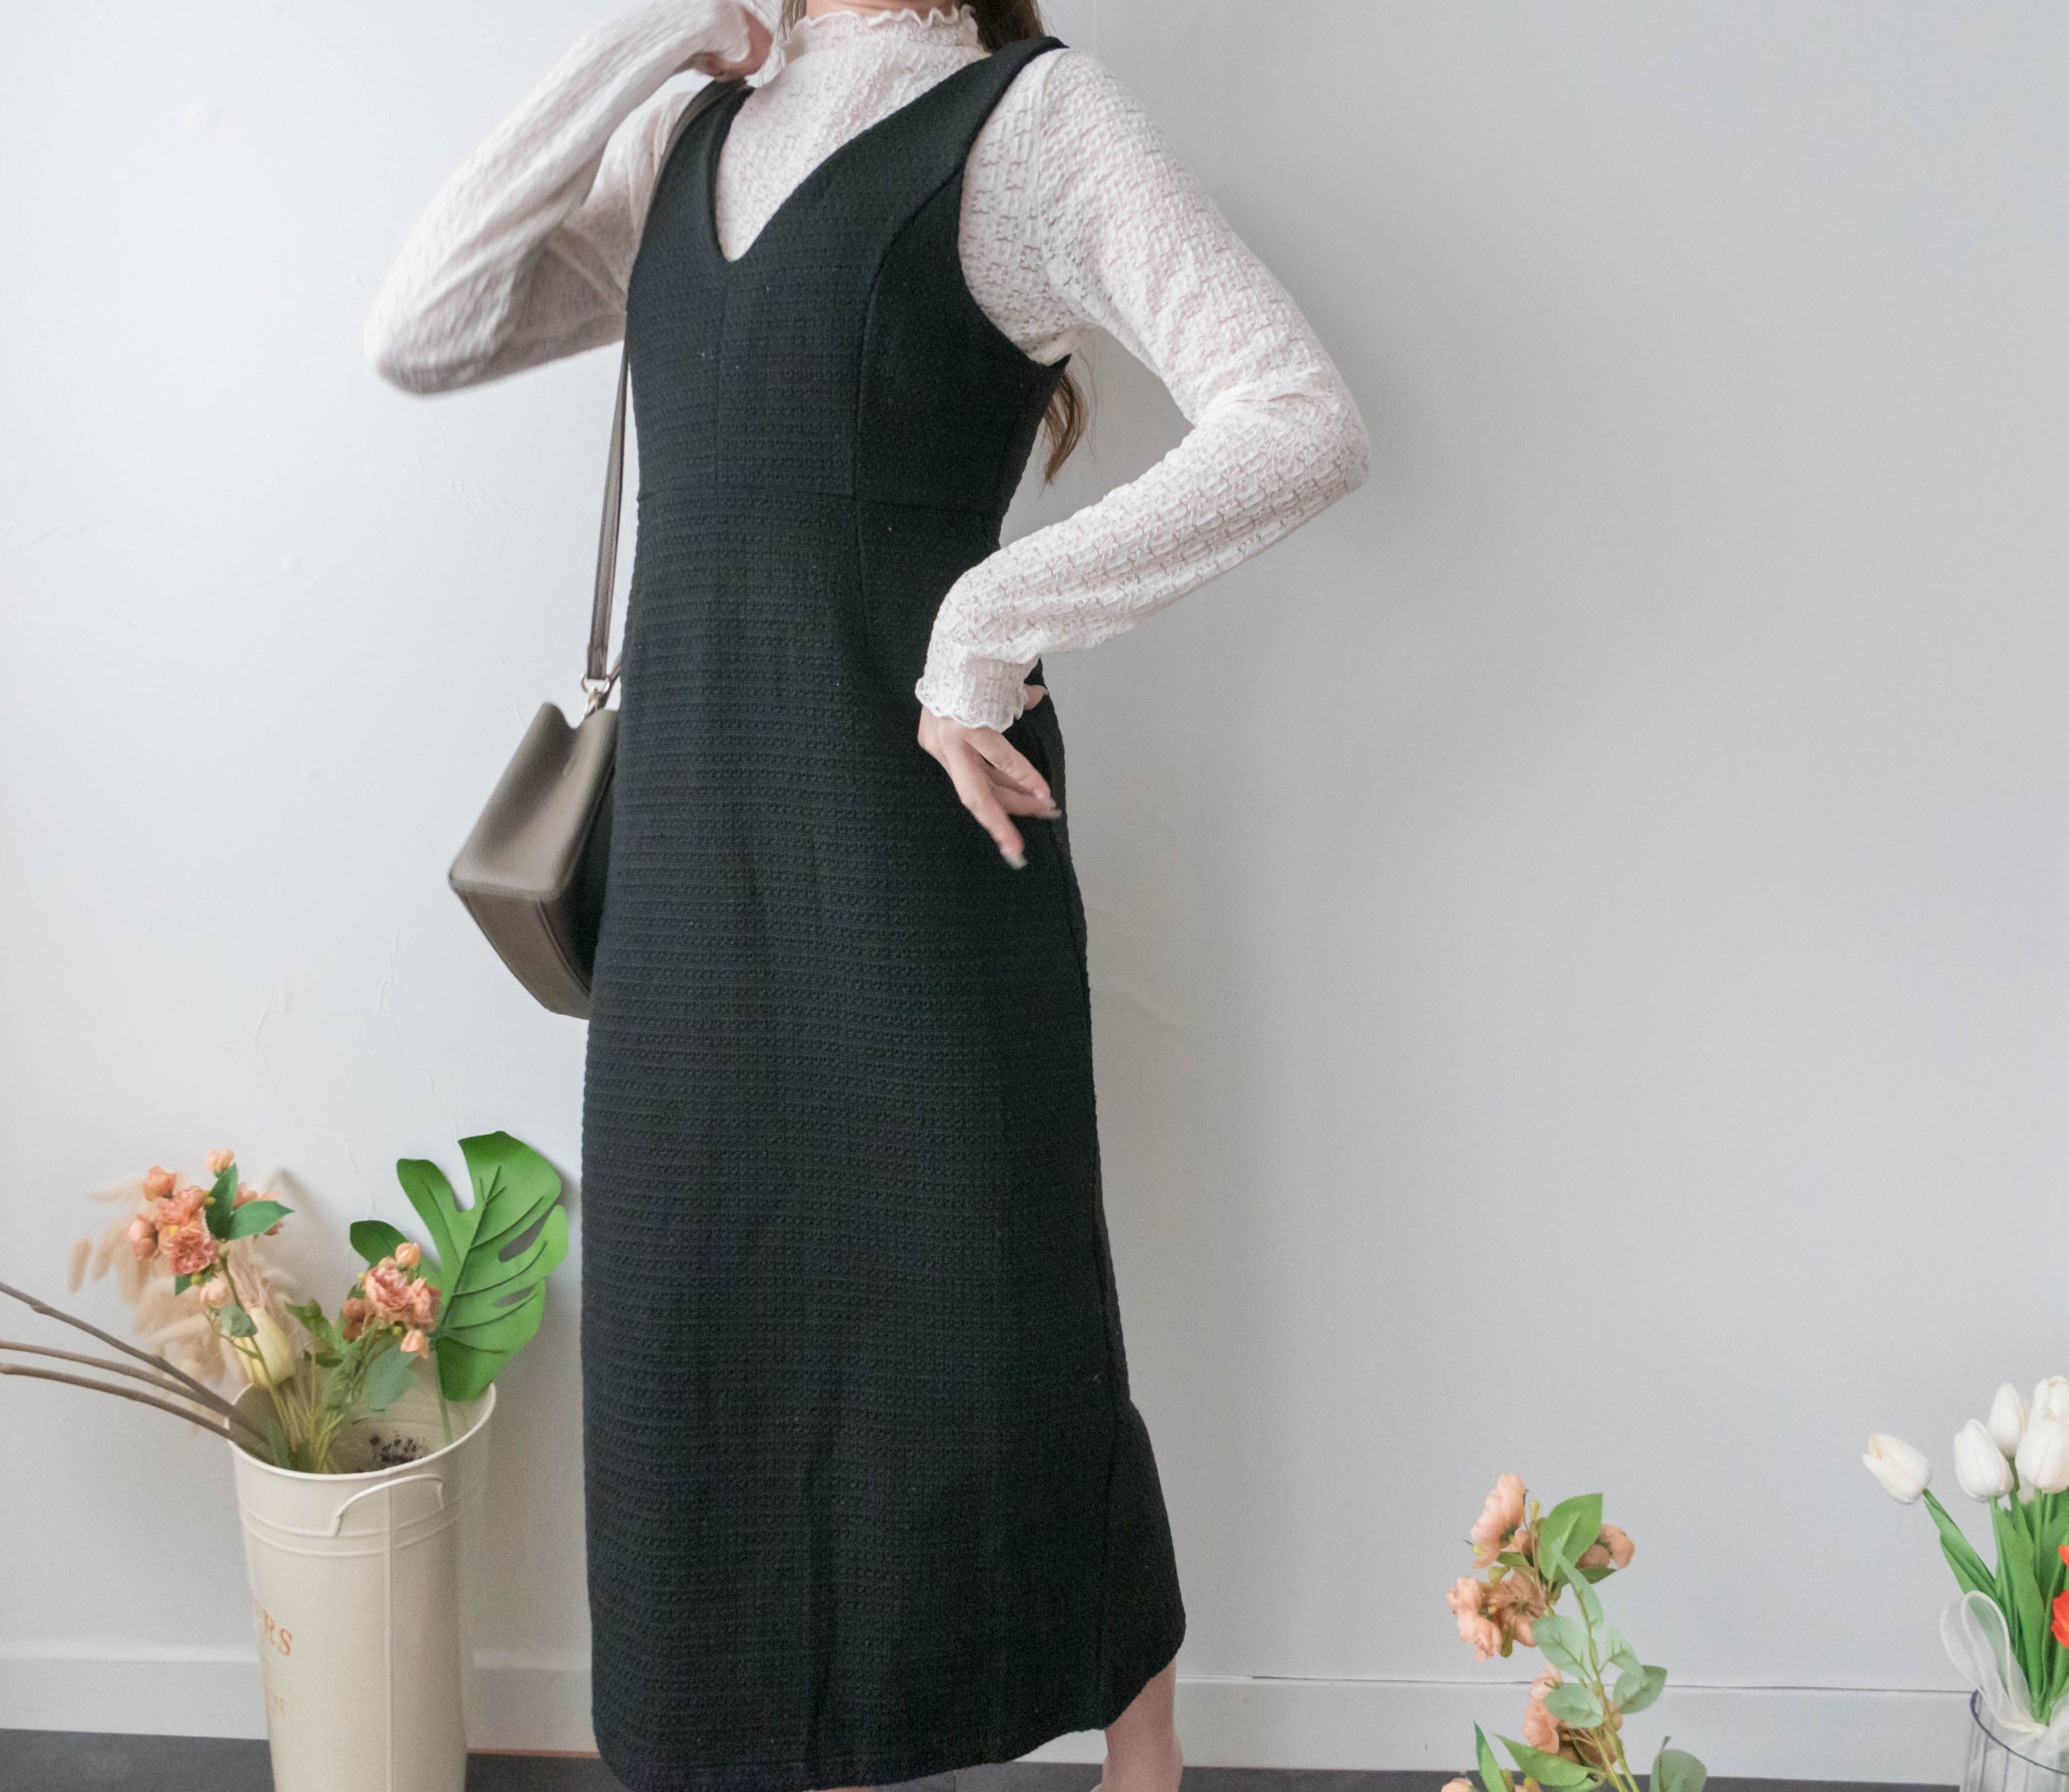 Sandy Embroidery 織布紋修身淑女前後v領背心裙, Dress/ DS9392